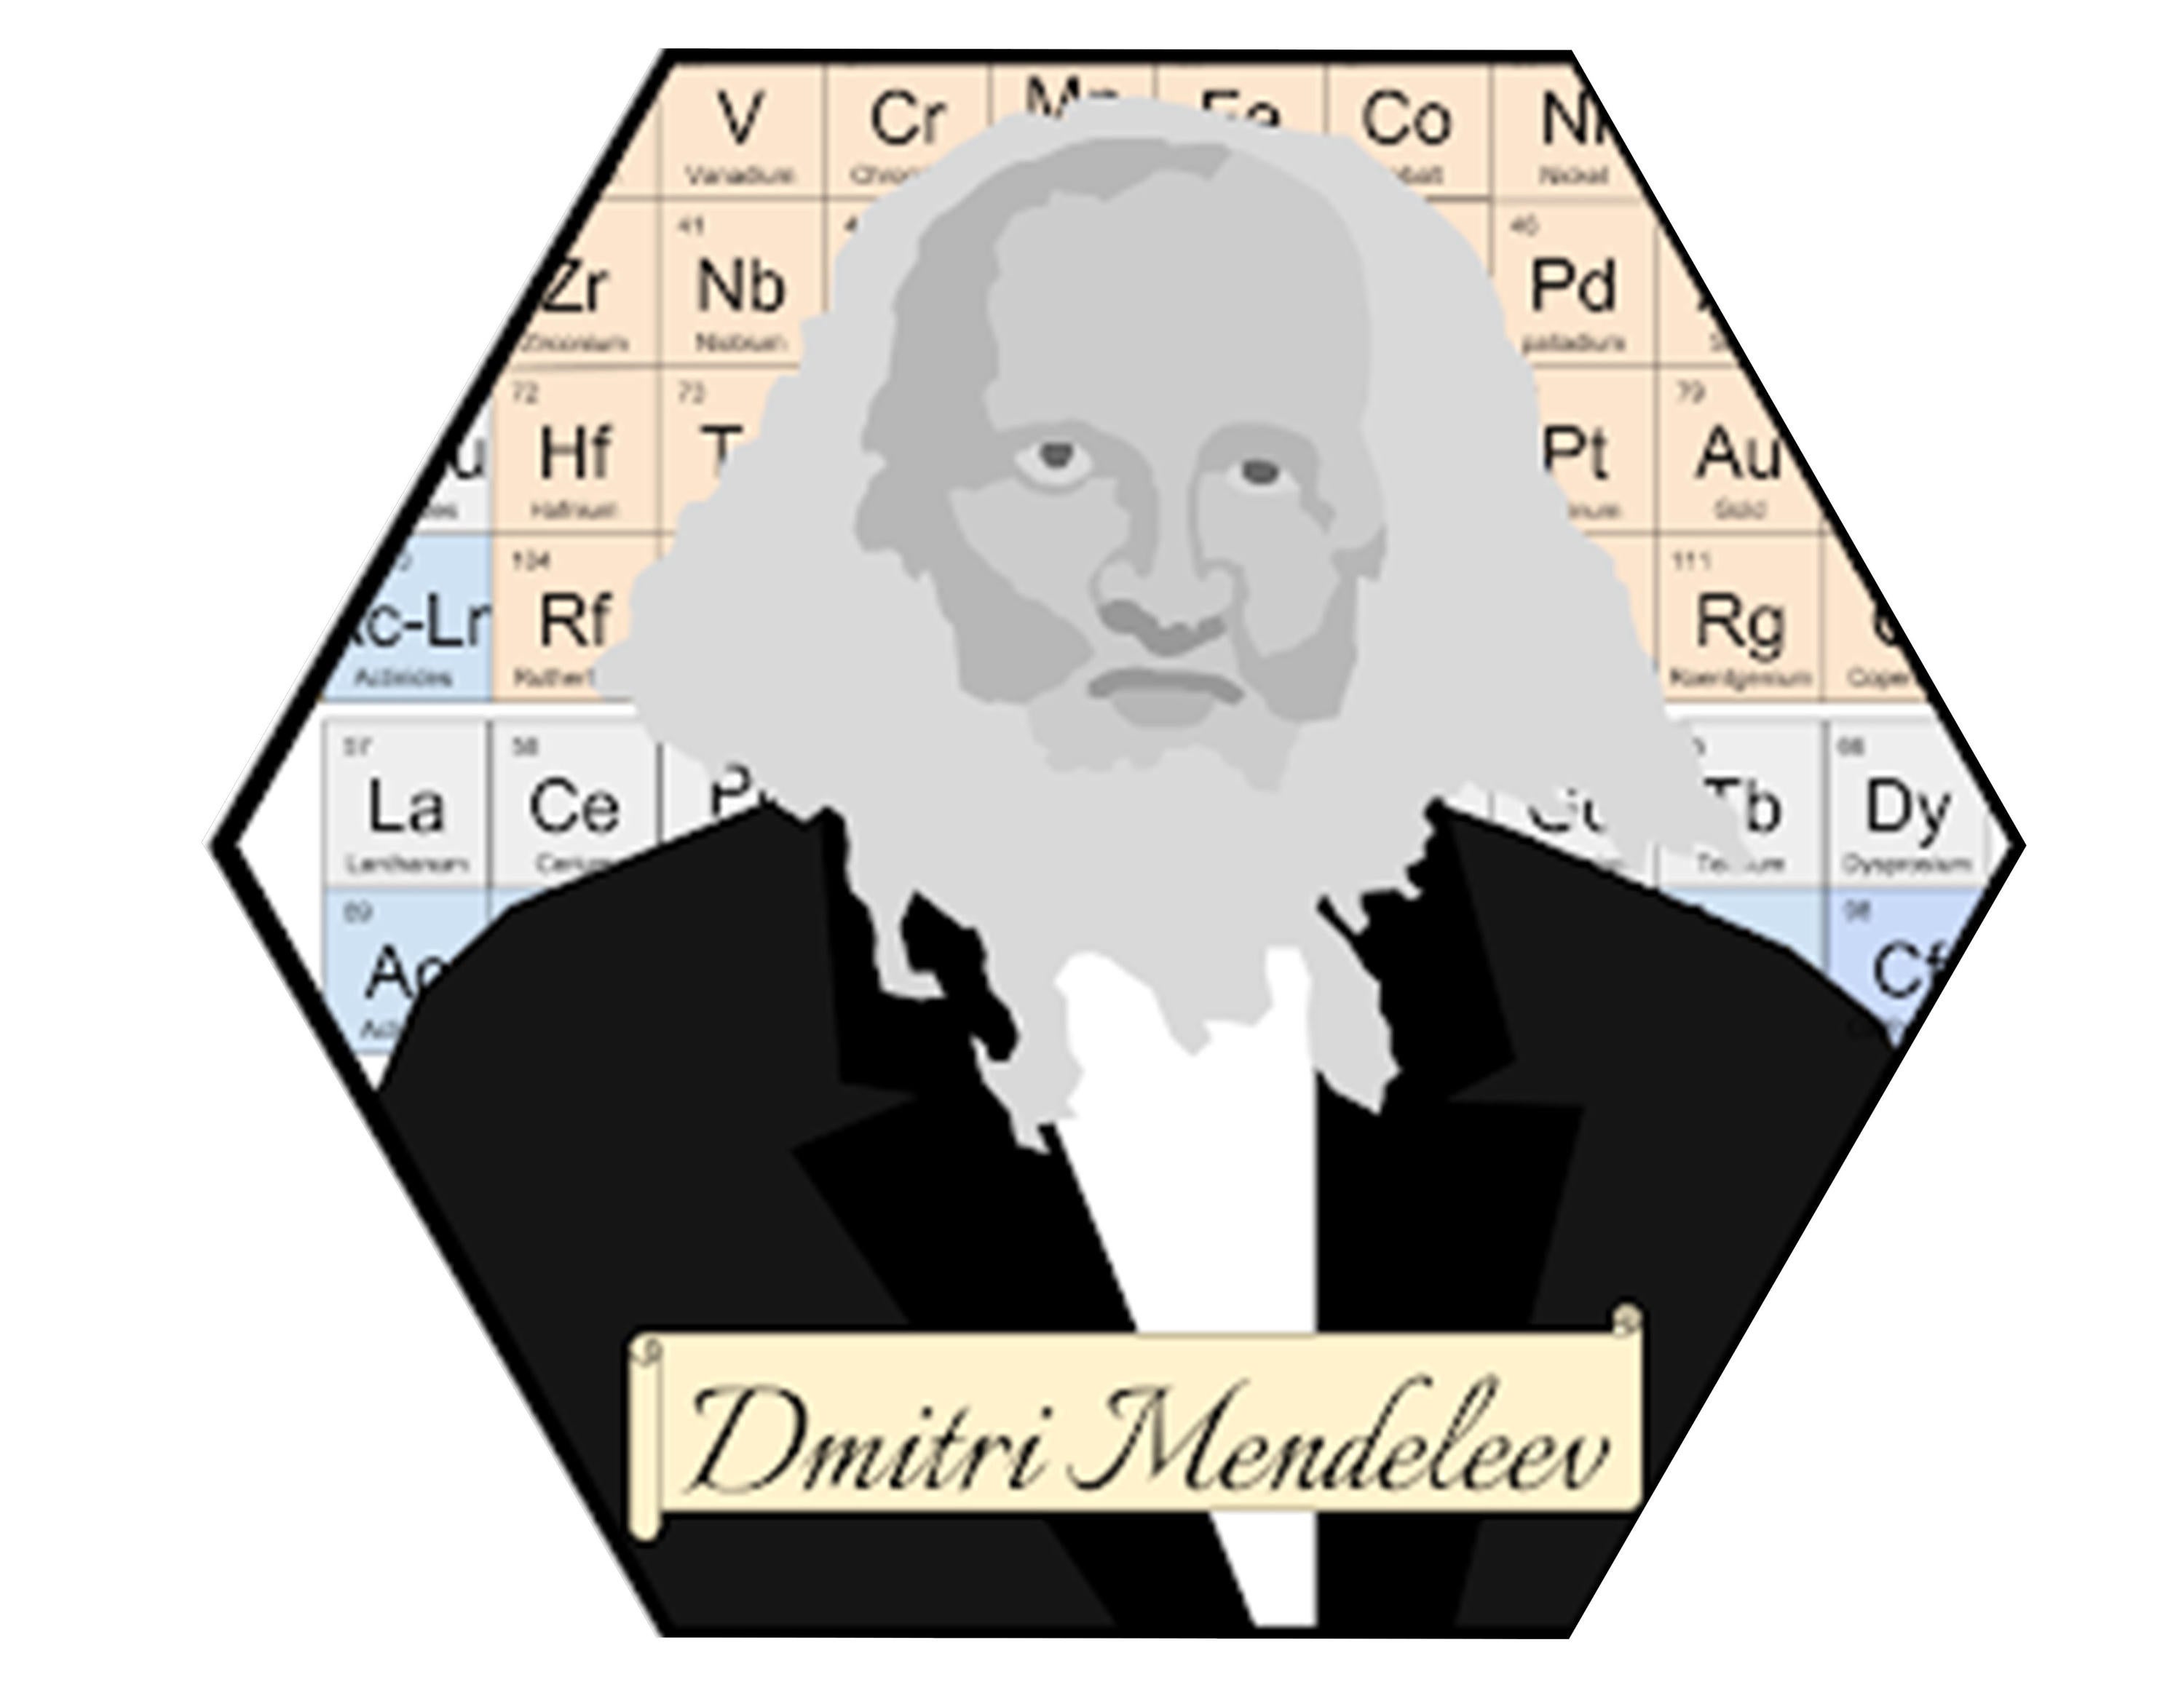 Black and white digital portrait of Mendeleev